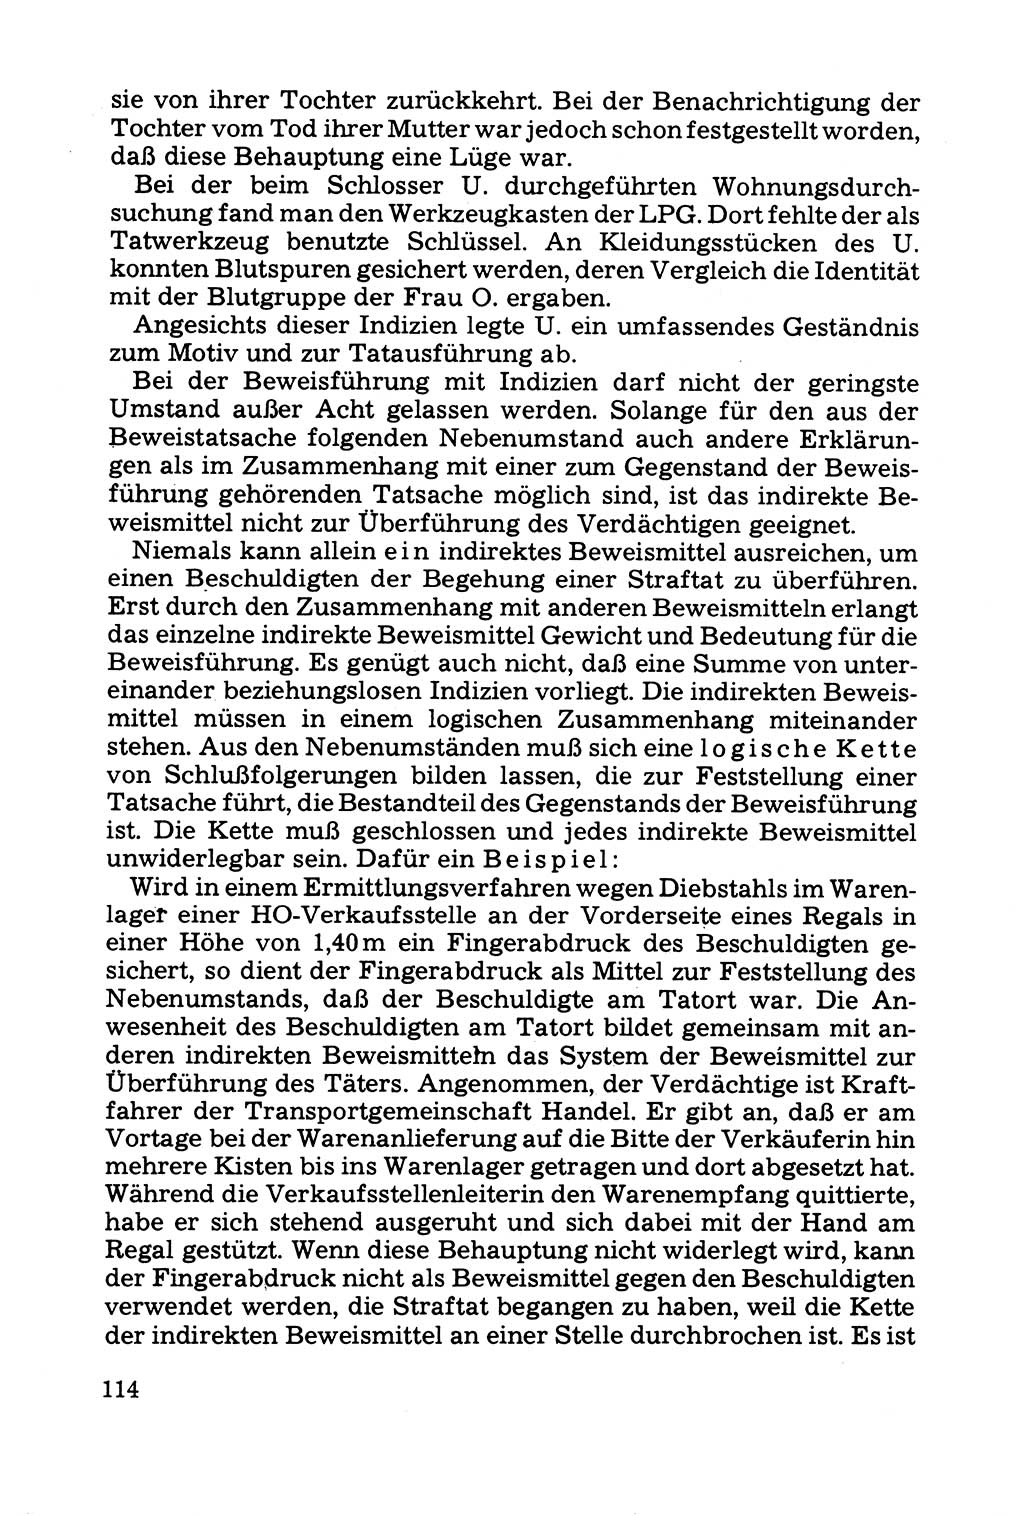 Grundfragen der Beweisführung im Ermittlungsverfahren [Deutsche Demokratische Republik (DDR)] 1980, Seite 114 (Bws.-Fhrg. EV DDR 1980, S. 114)